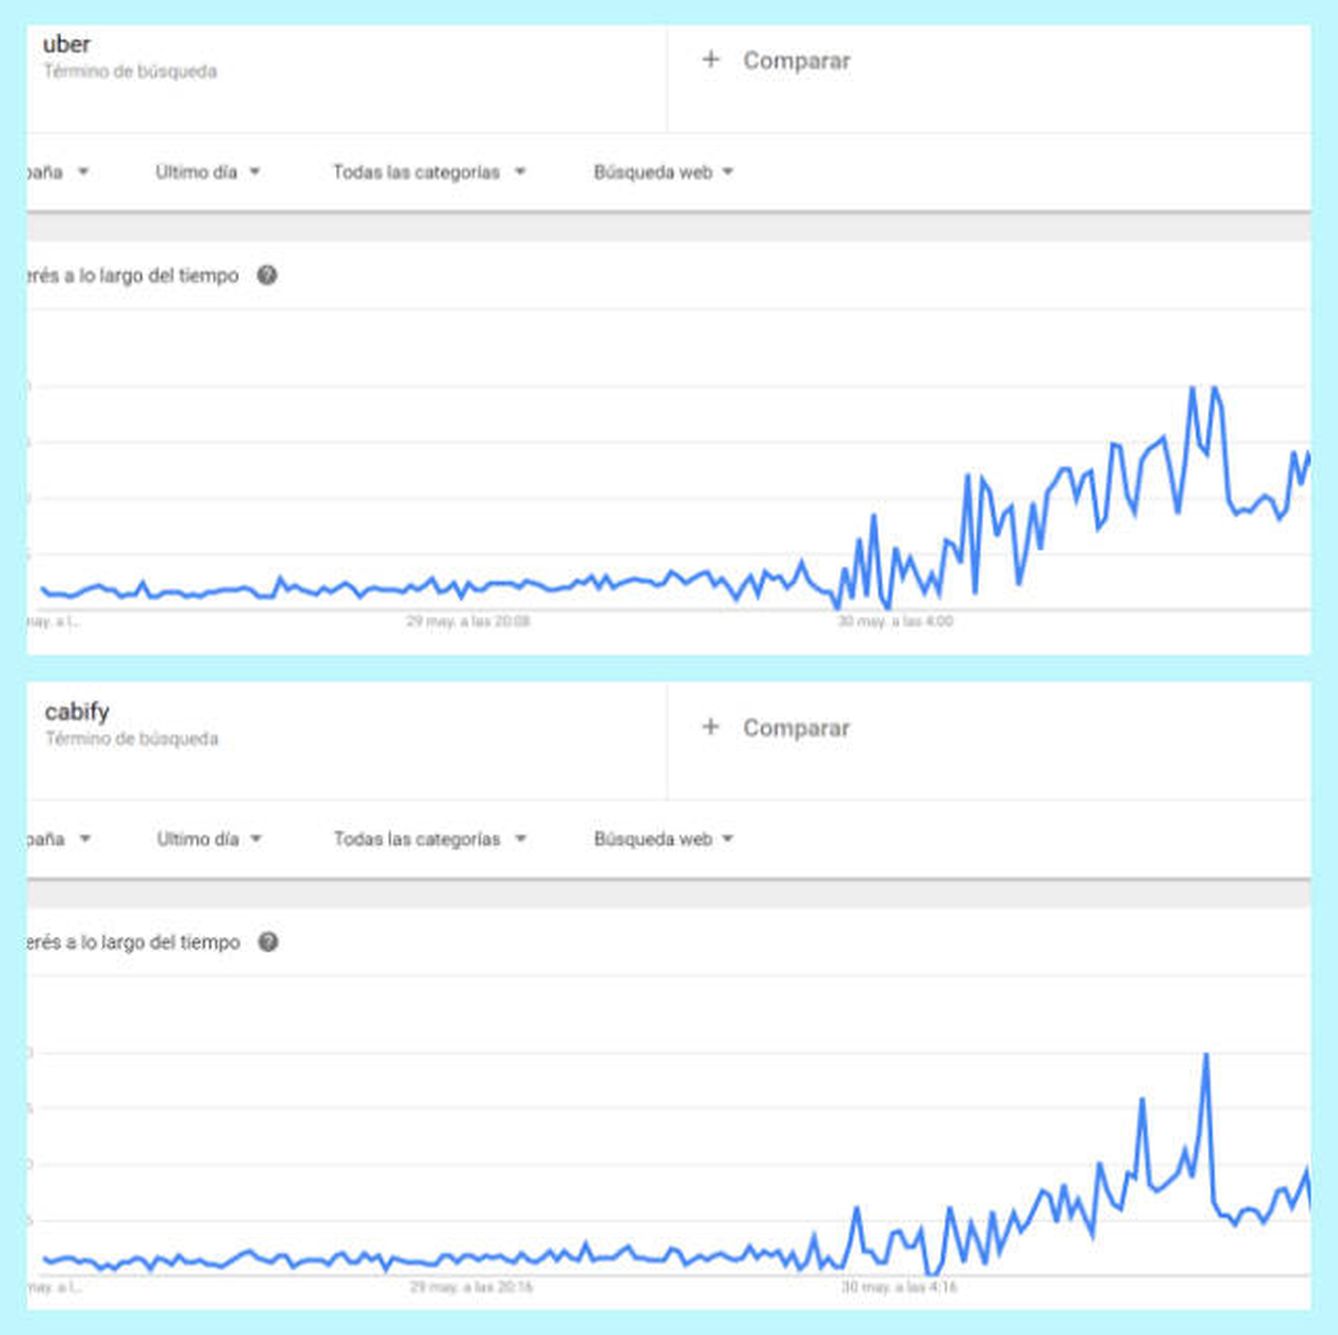 Comparativa de las búsquedas en Google sobre Uber (arriba) y Cabify (abajo) durante las últimas 24 horas en España